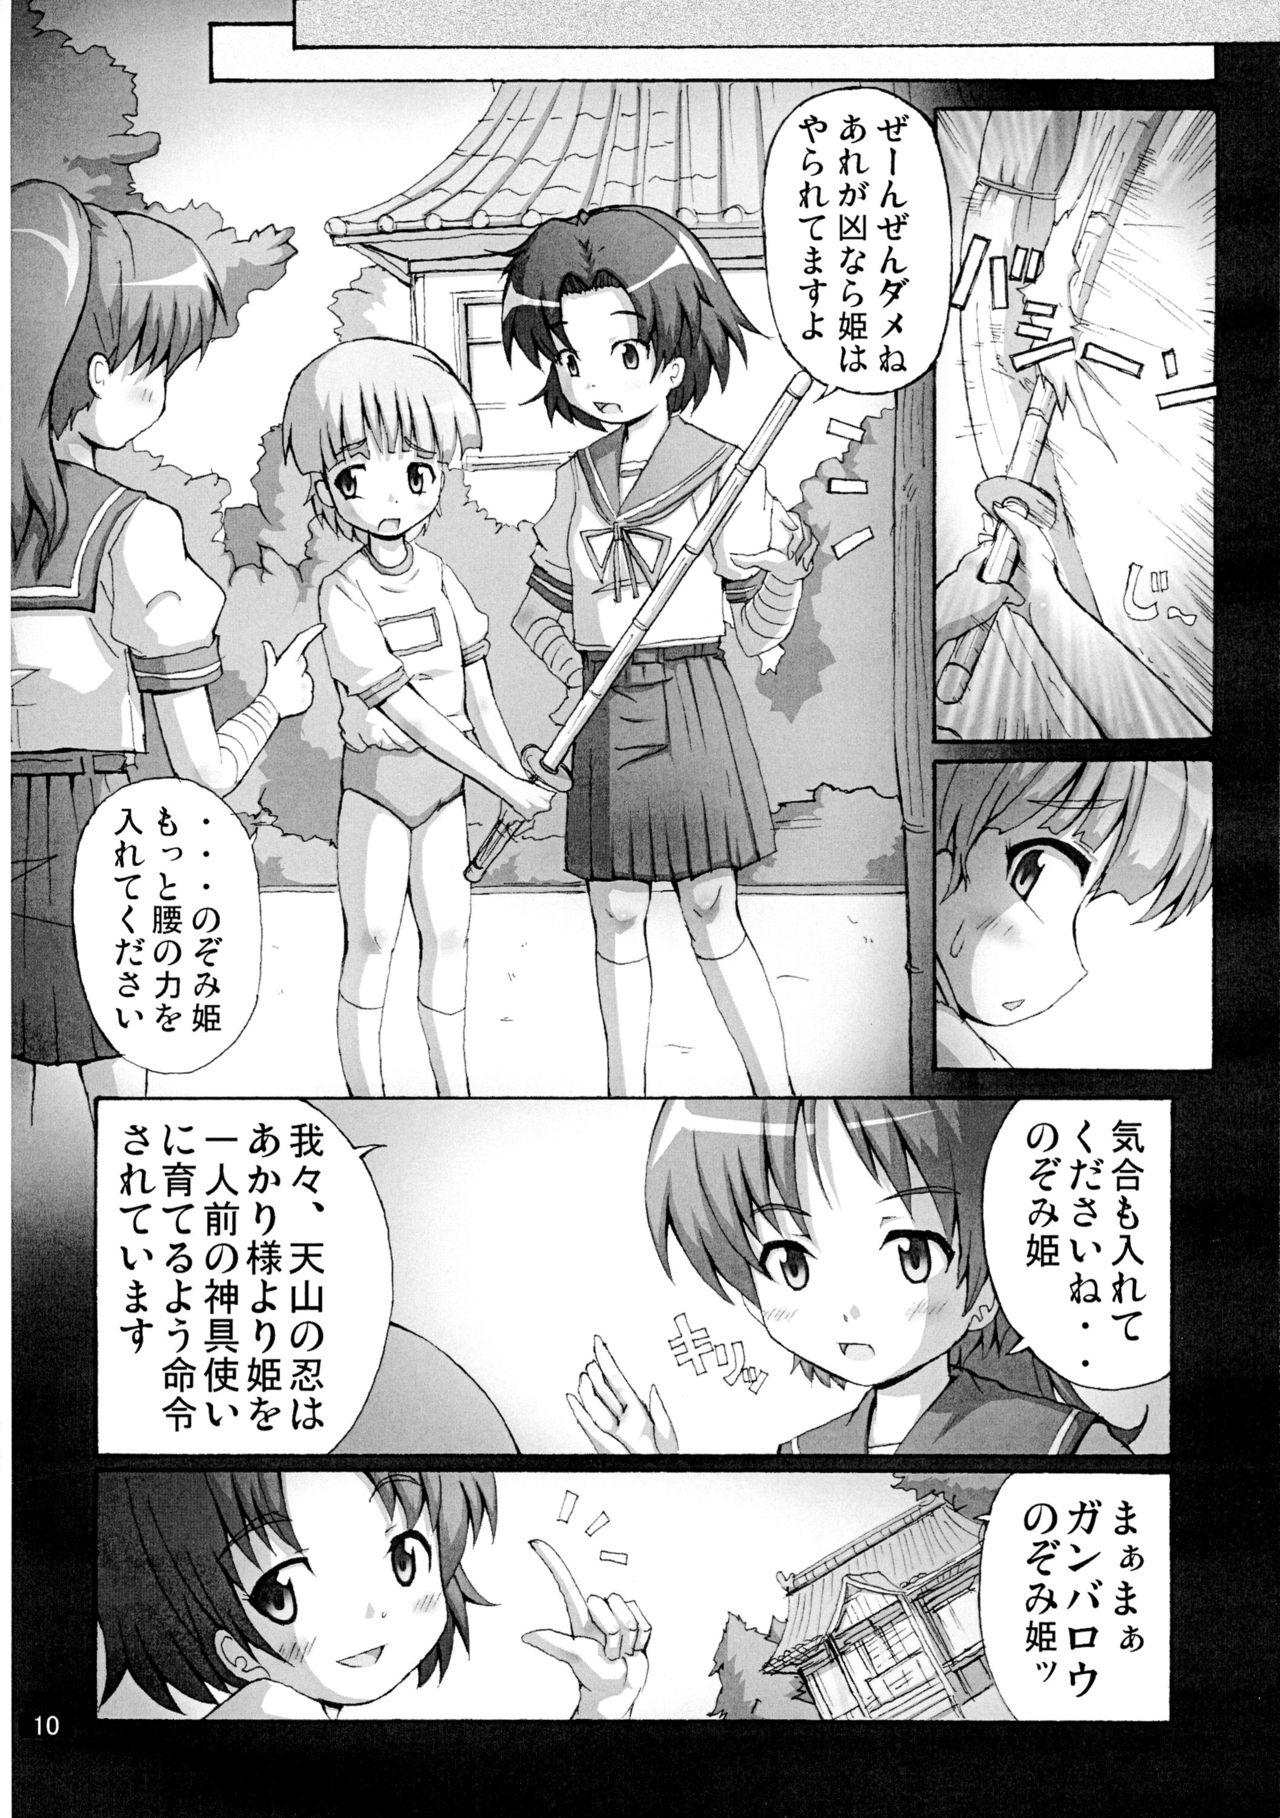 Hot Naked Women Kaiun no Taimashi Nozomi 5 1/ 2 Stepfather - Page 10